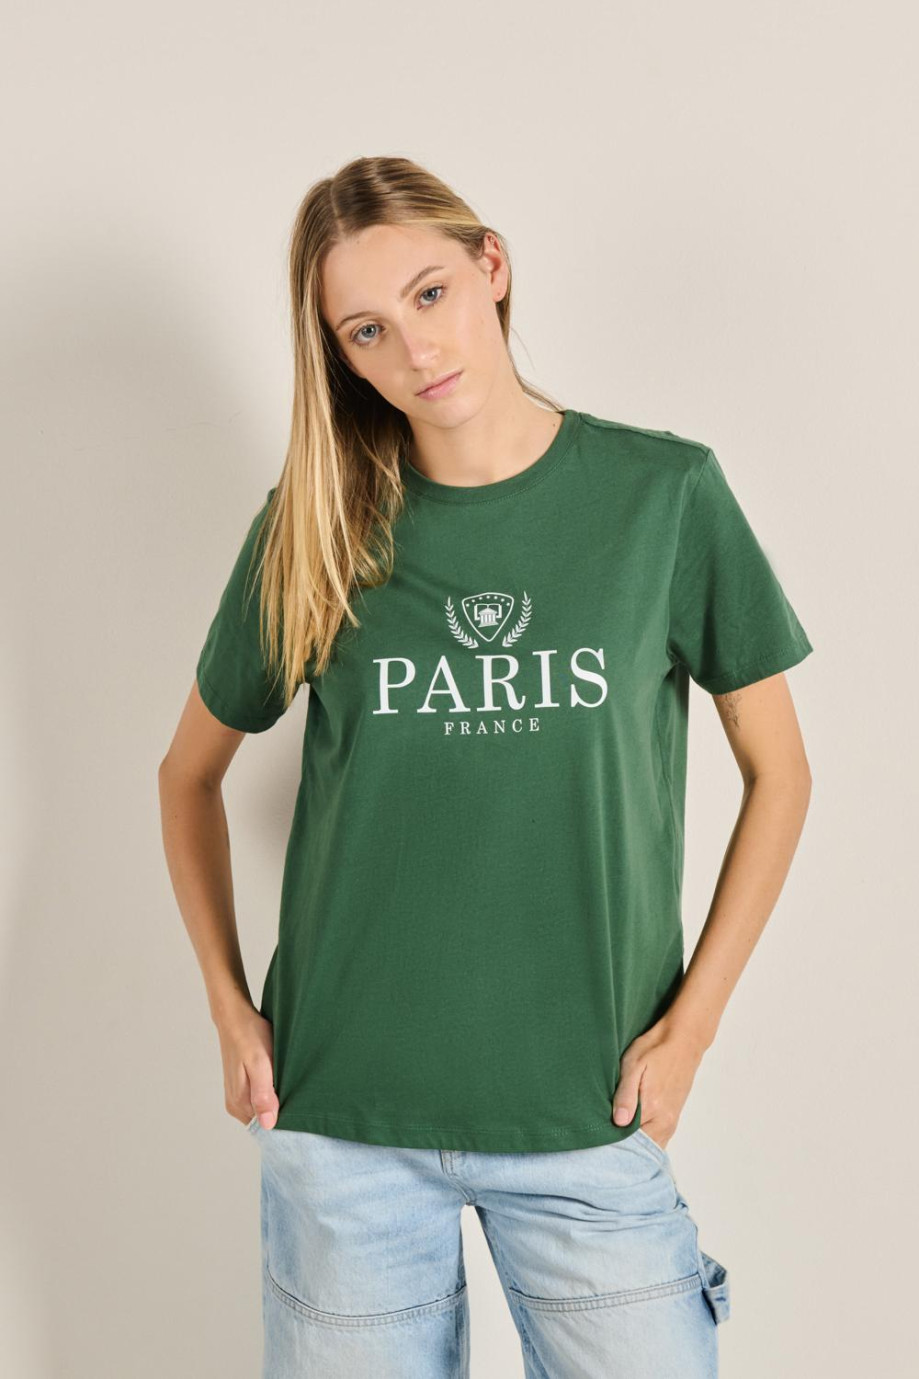 Camiseta unicolor con cuello redondo y diseño college